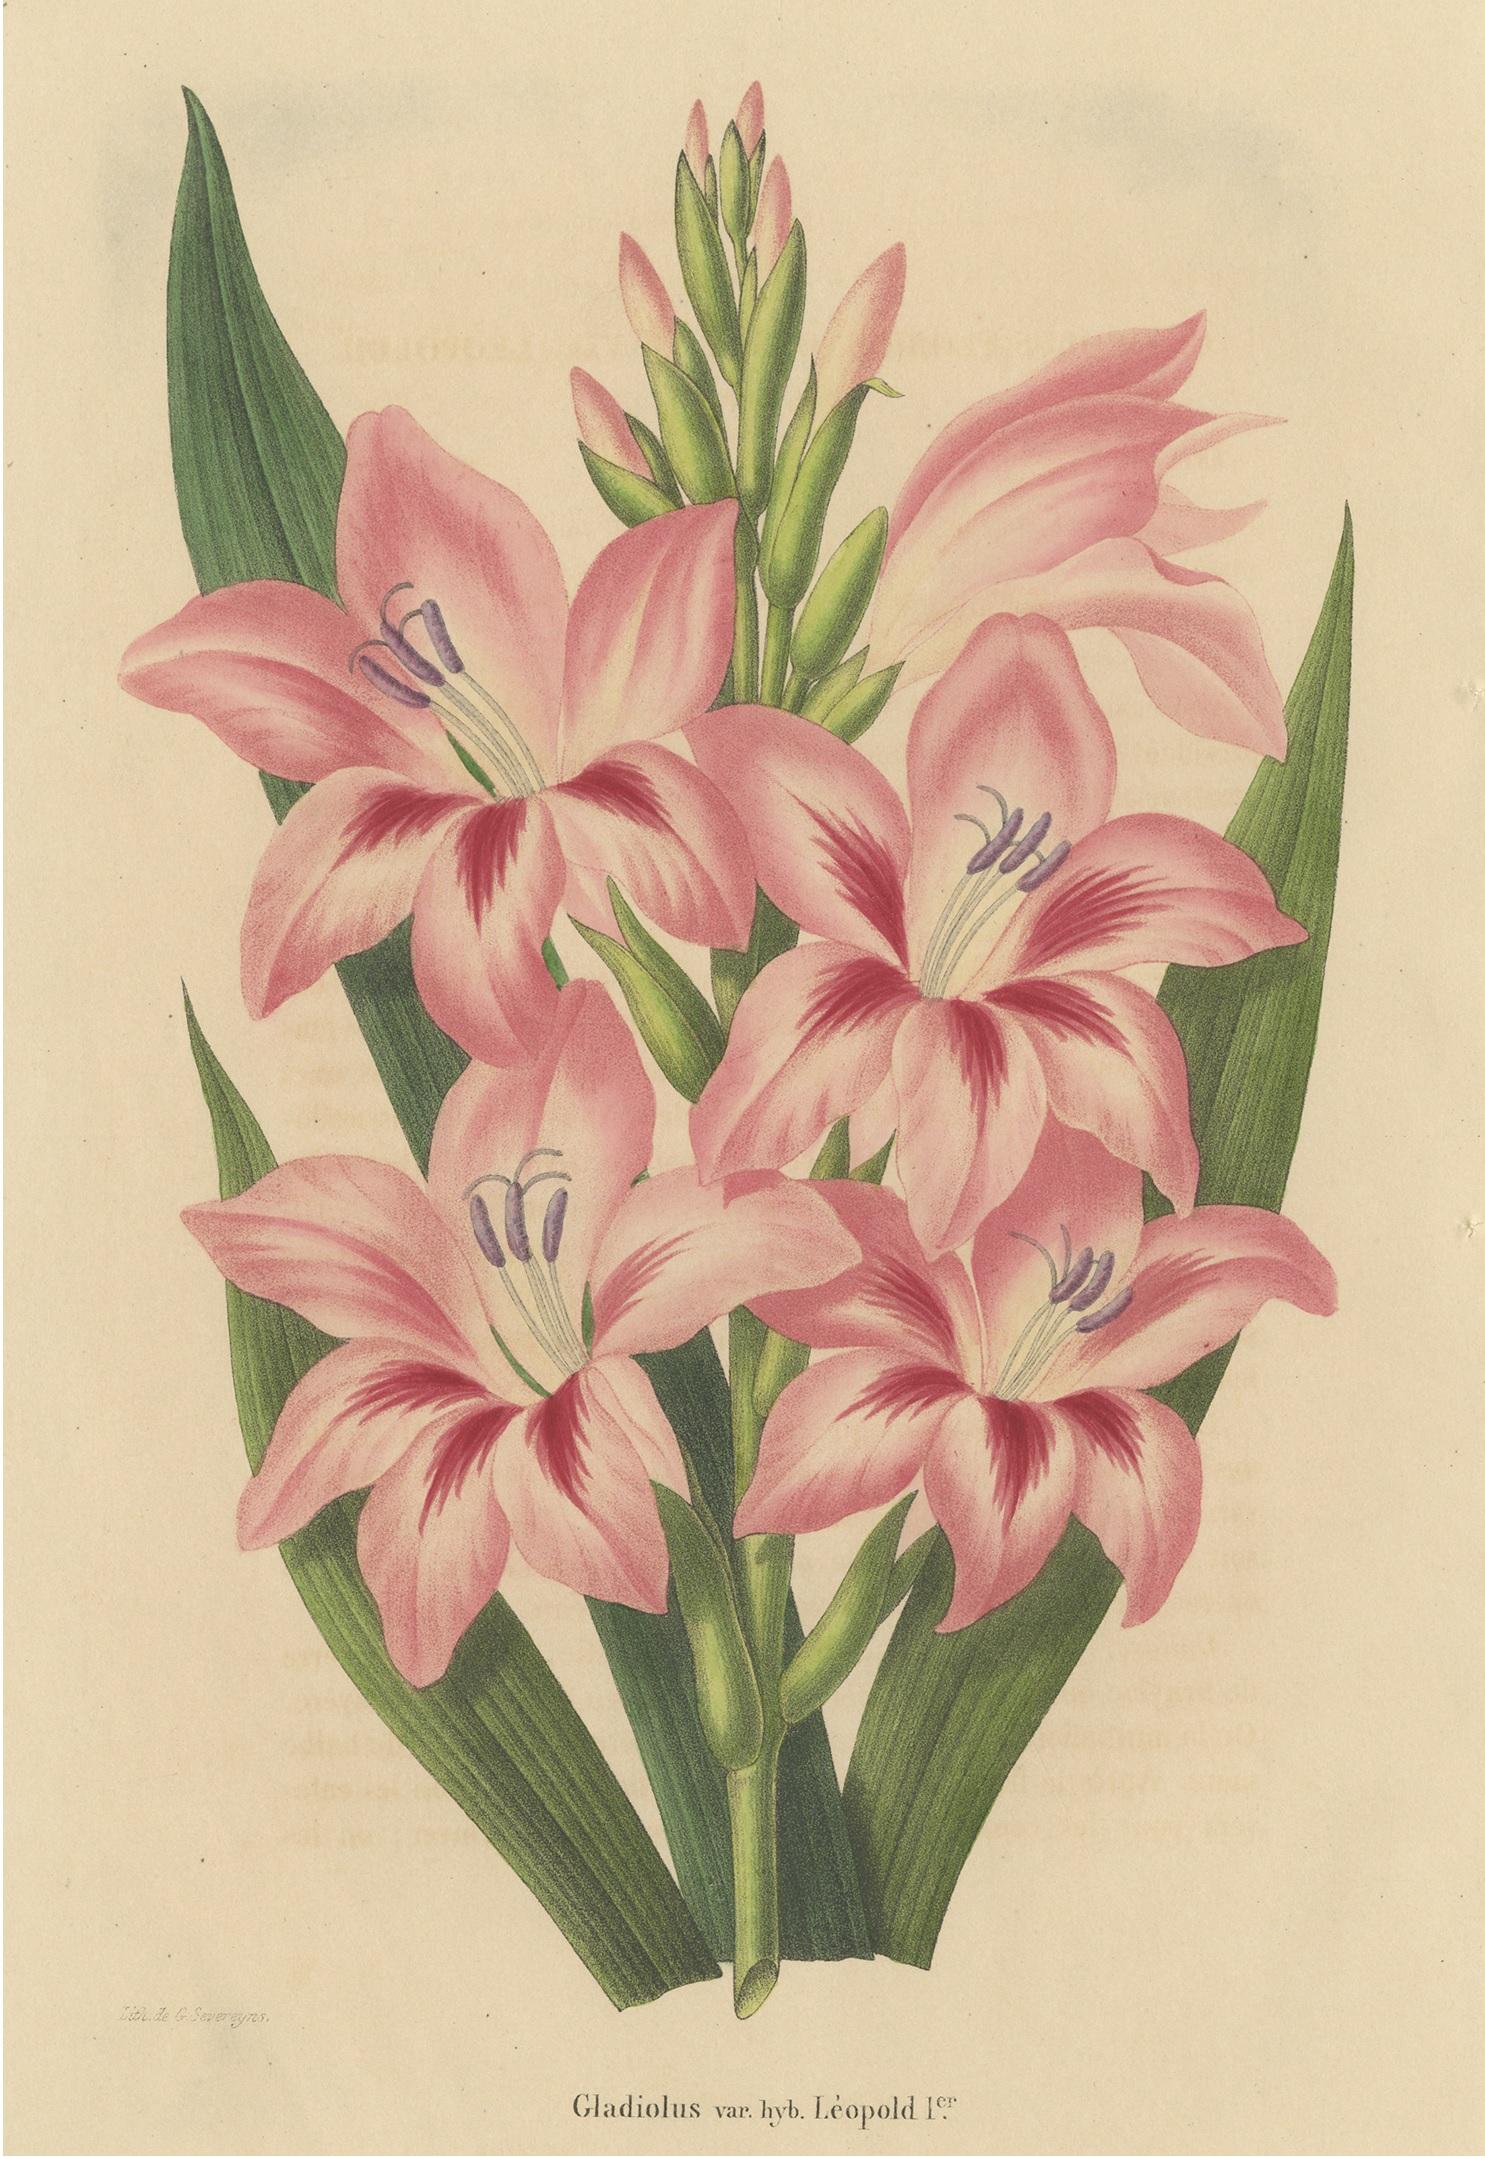 Antique print titled 'Gladiolus var. hyb. Lèopold'. Lithograph of a pink gladiolus species. This print originates from volume 4 of 'Annales de la Société Royale d'Agriculture et de Botanique (..)' published in 1848.